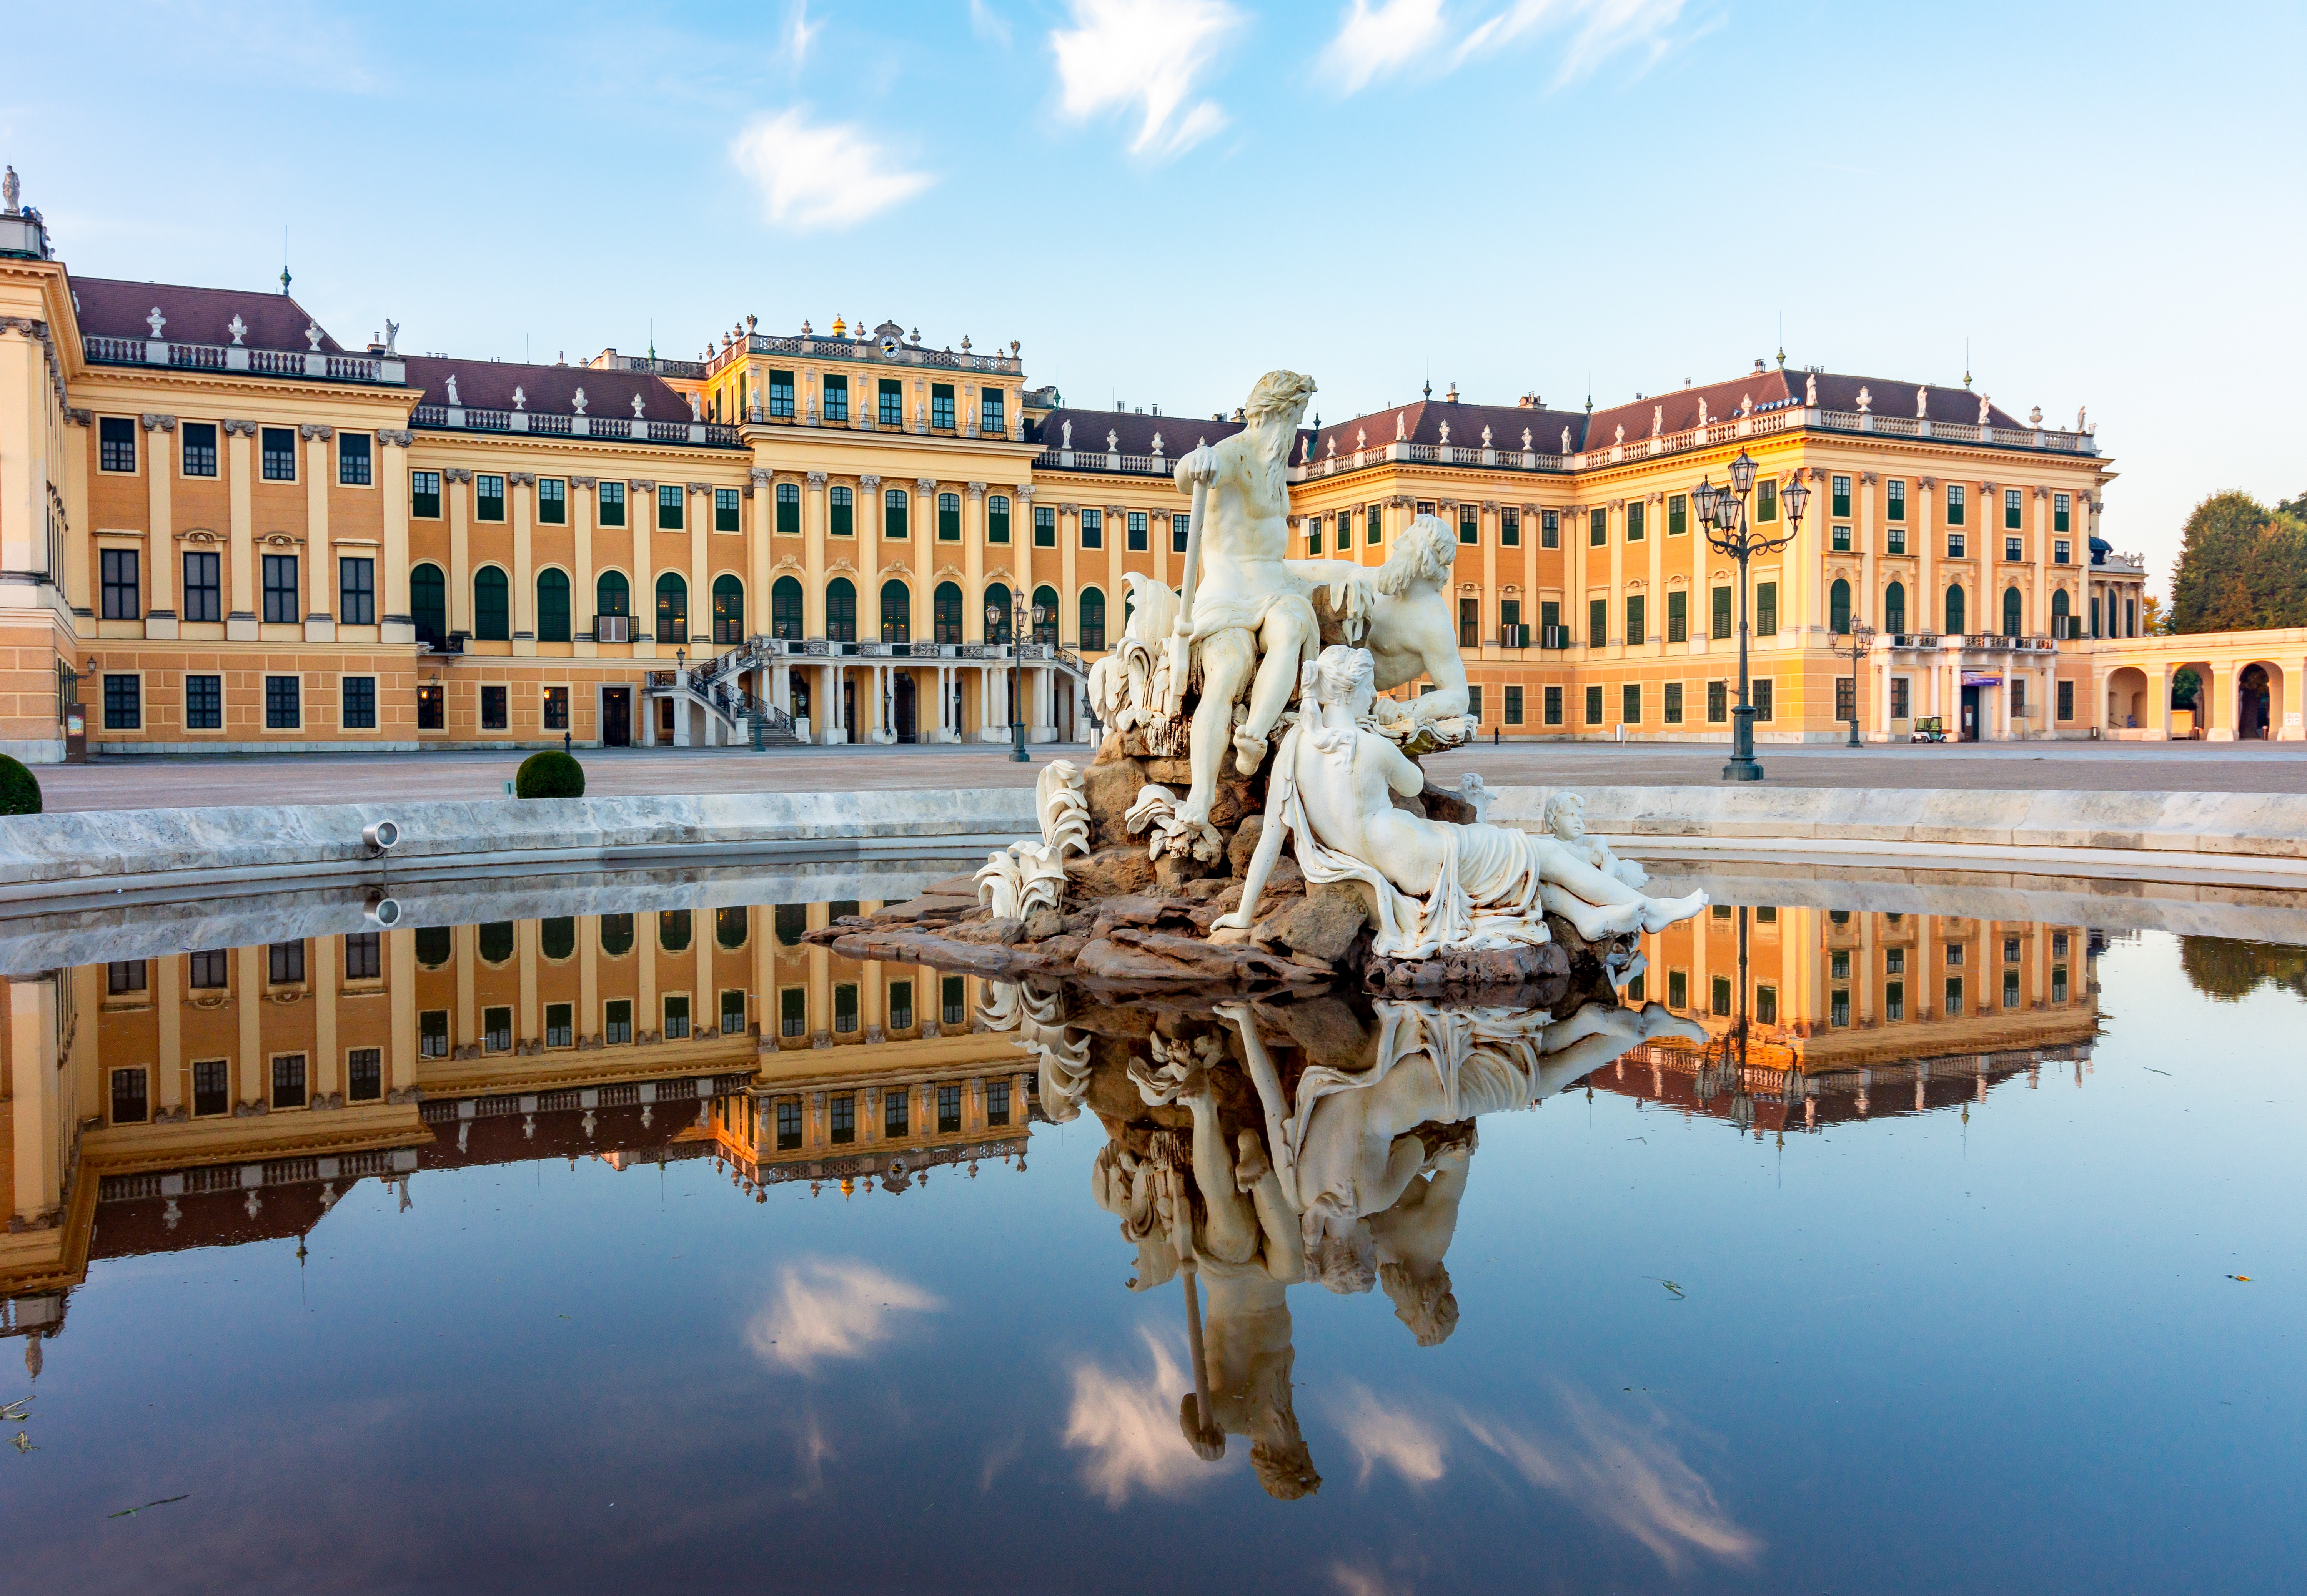 Schonbrunn palace in Vienna, Austria